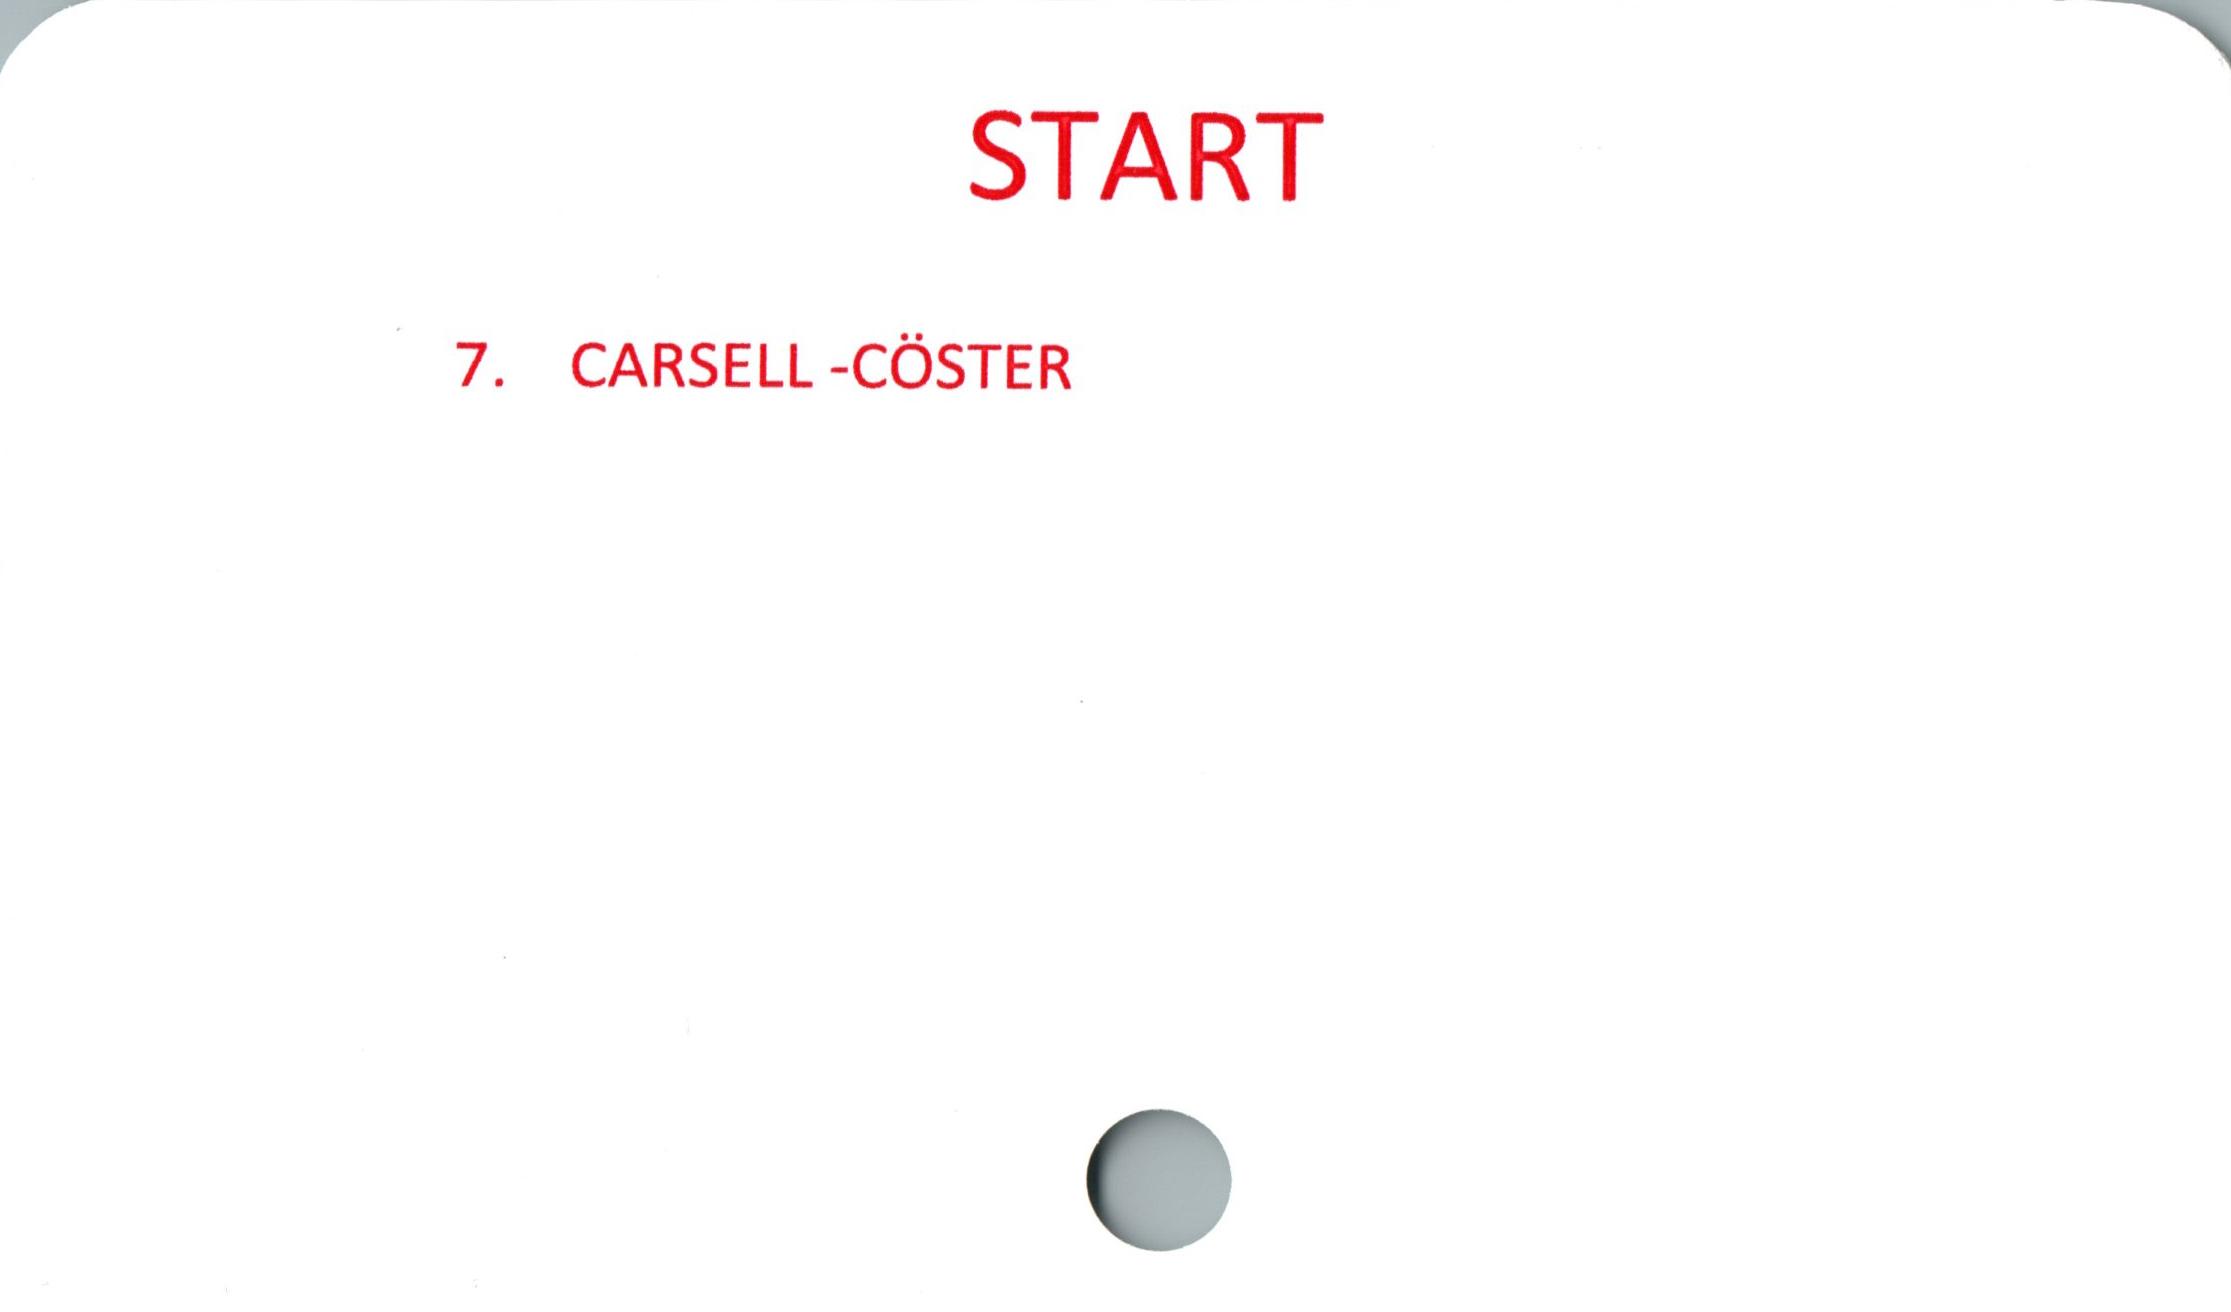 CASELL - CÖSTER ﻿START

7. CARSELL -CÖSTER